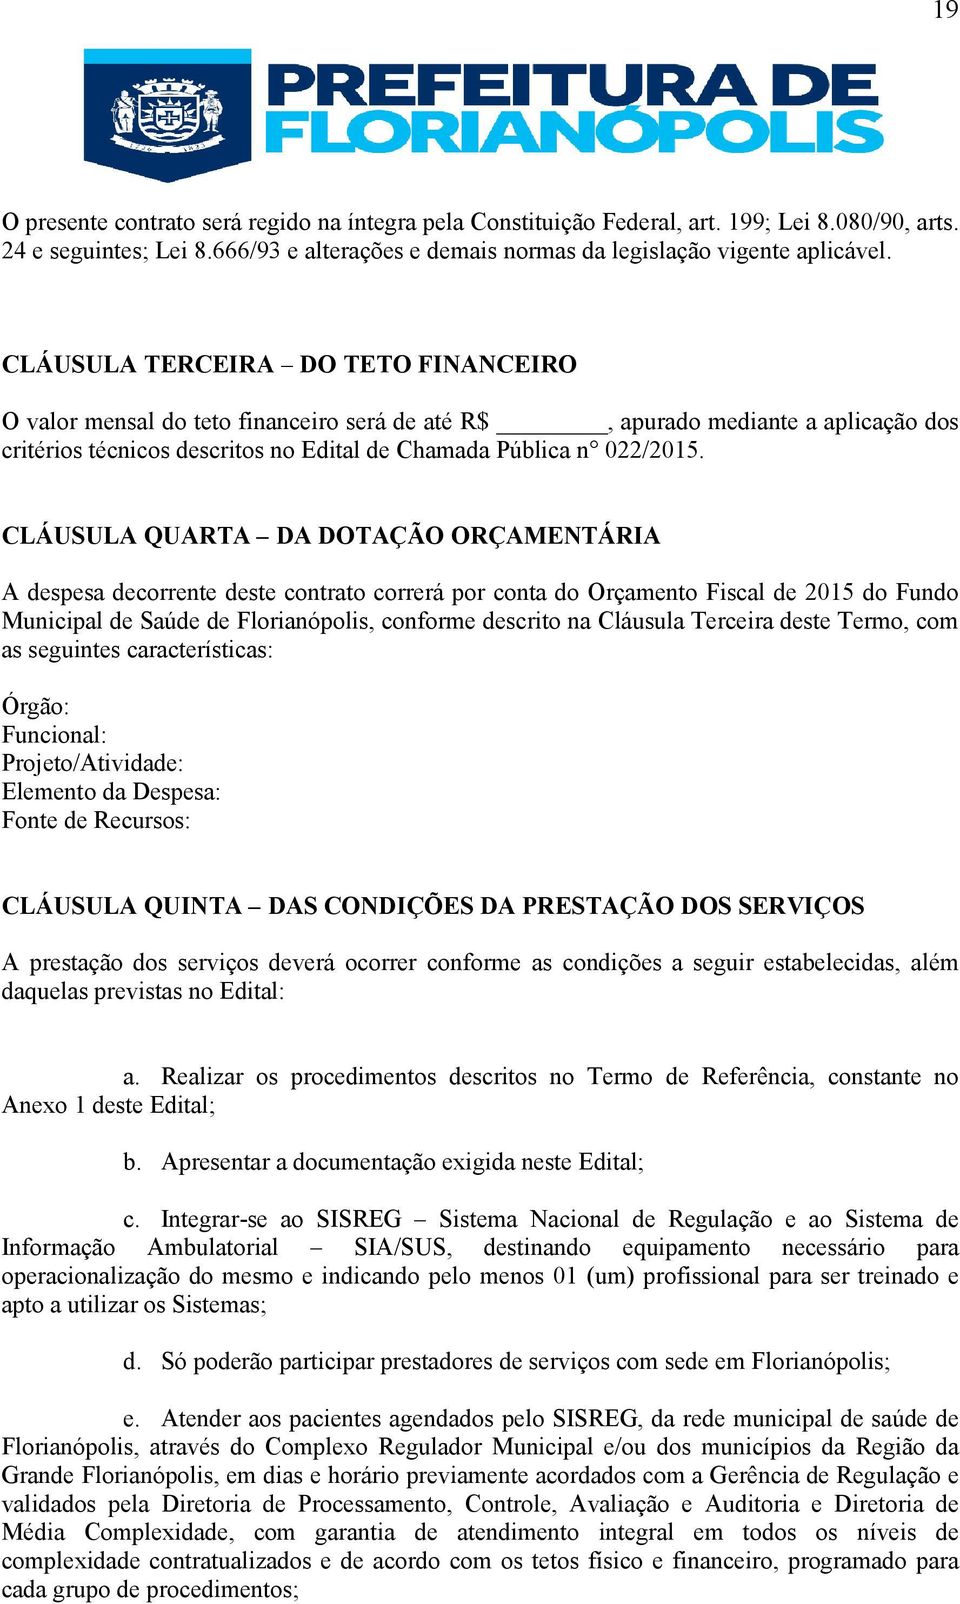 CLÁUSULA QUARTA DA DOTAÇÃO ORÇAMENTÁRIA A despesa decorrente deste contrato correrá por conta do Orçamento Fiscal de 2015 do Fundo Municipal de Saúde de Florianópolis, conforme descrito na Cláusula